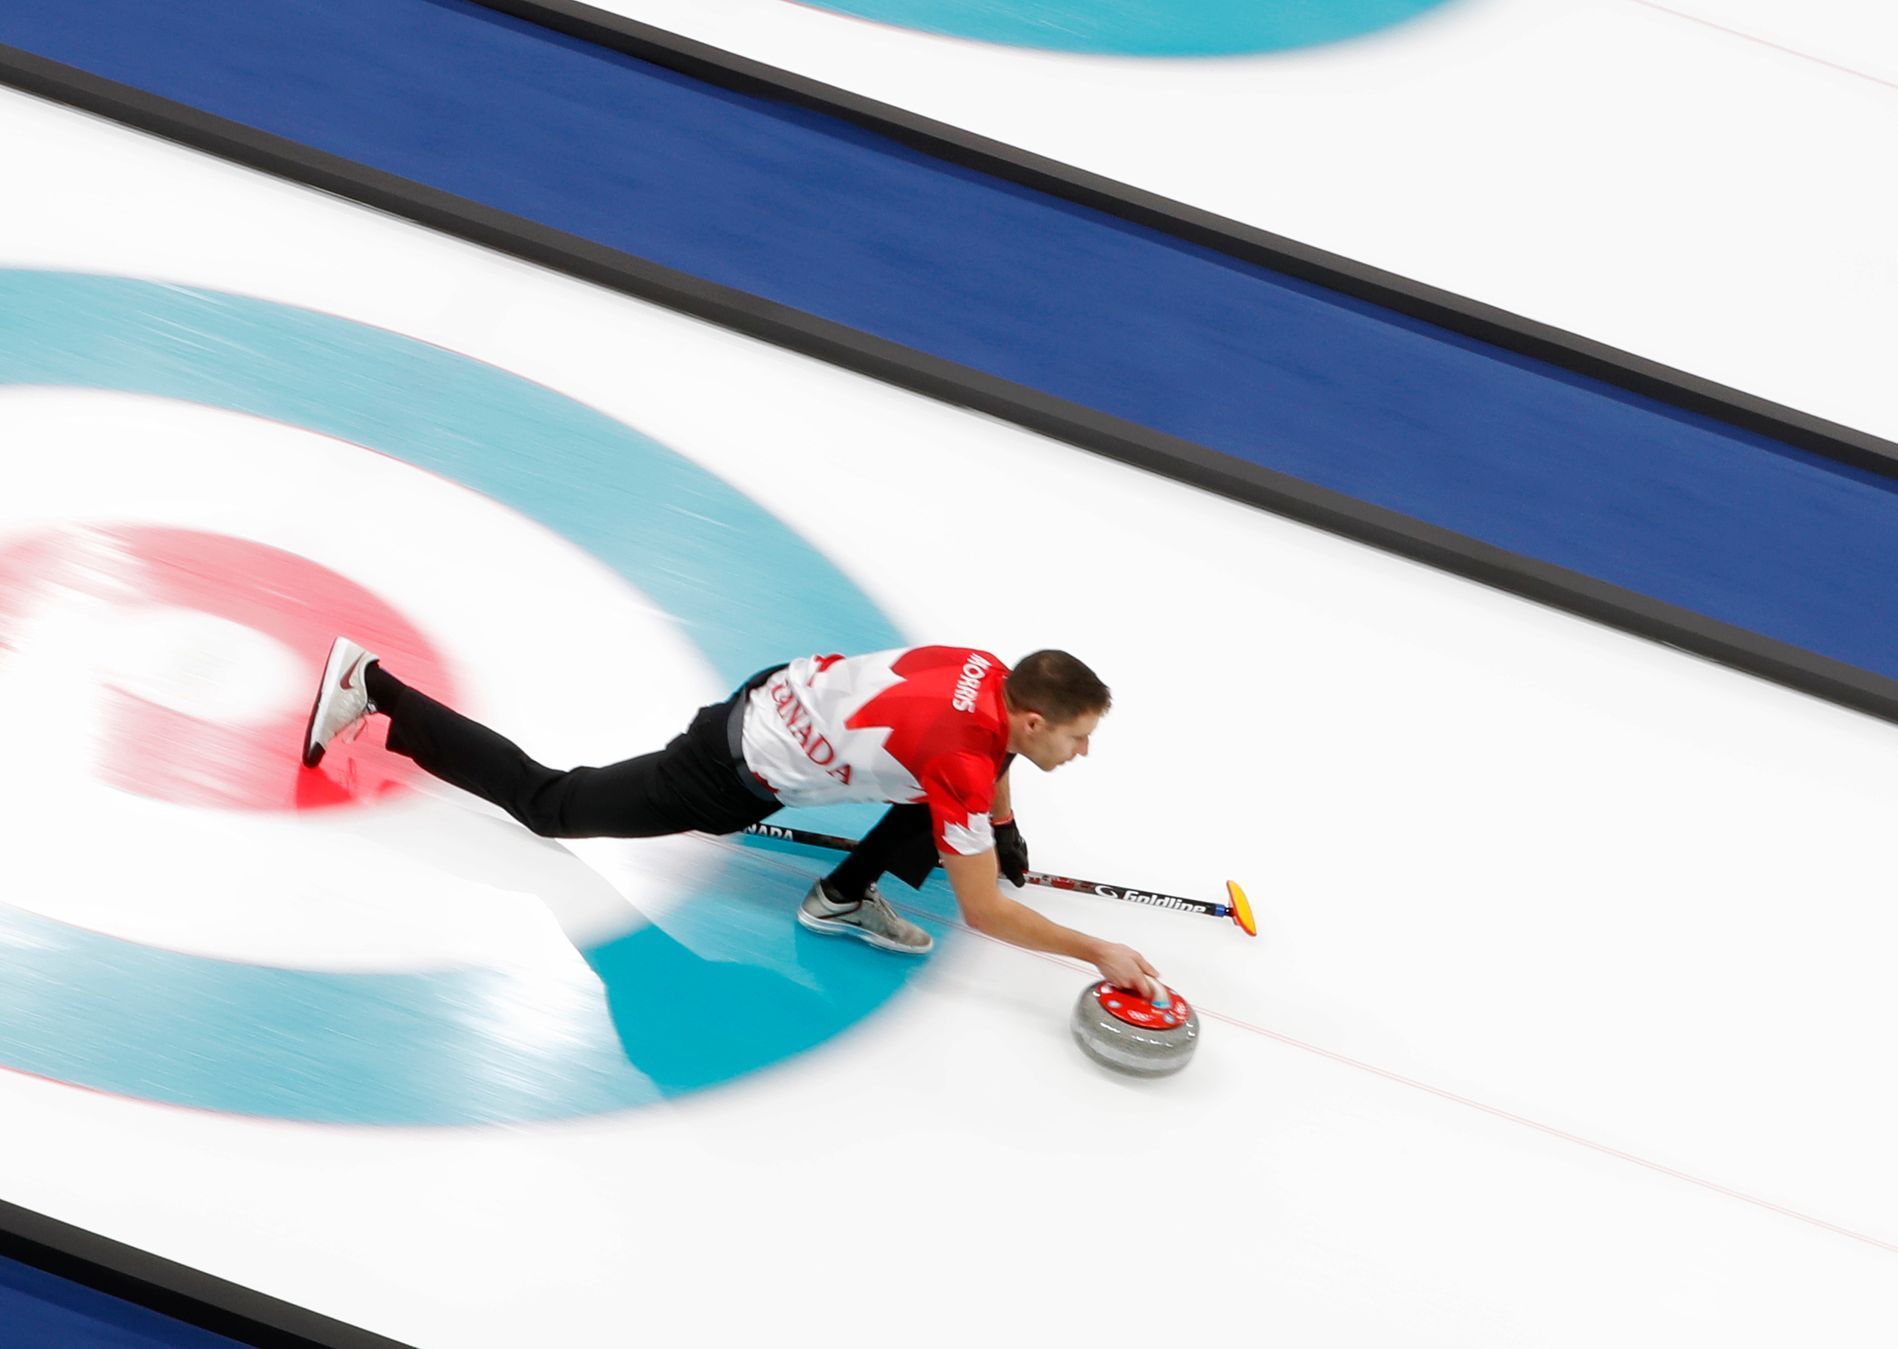 OH 2018, curling, soutěž mixů, John Morris z Kanady